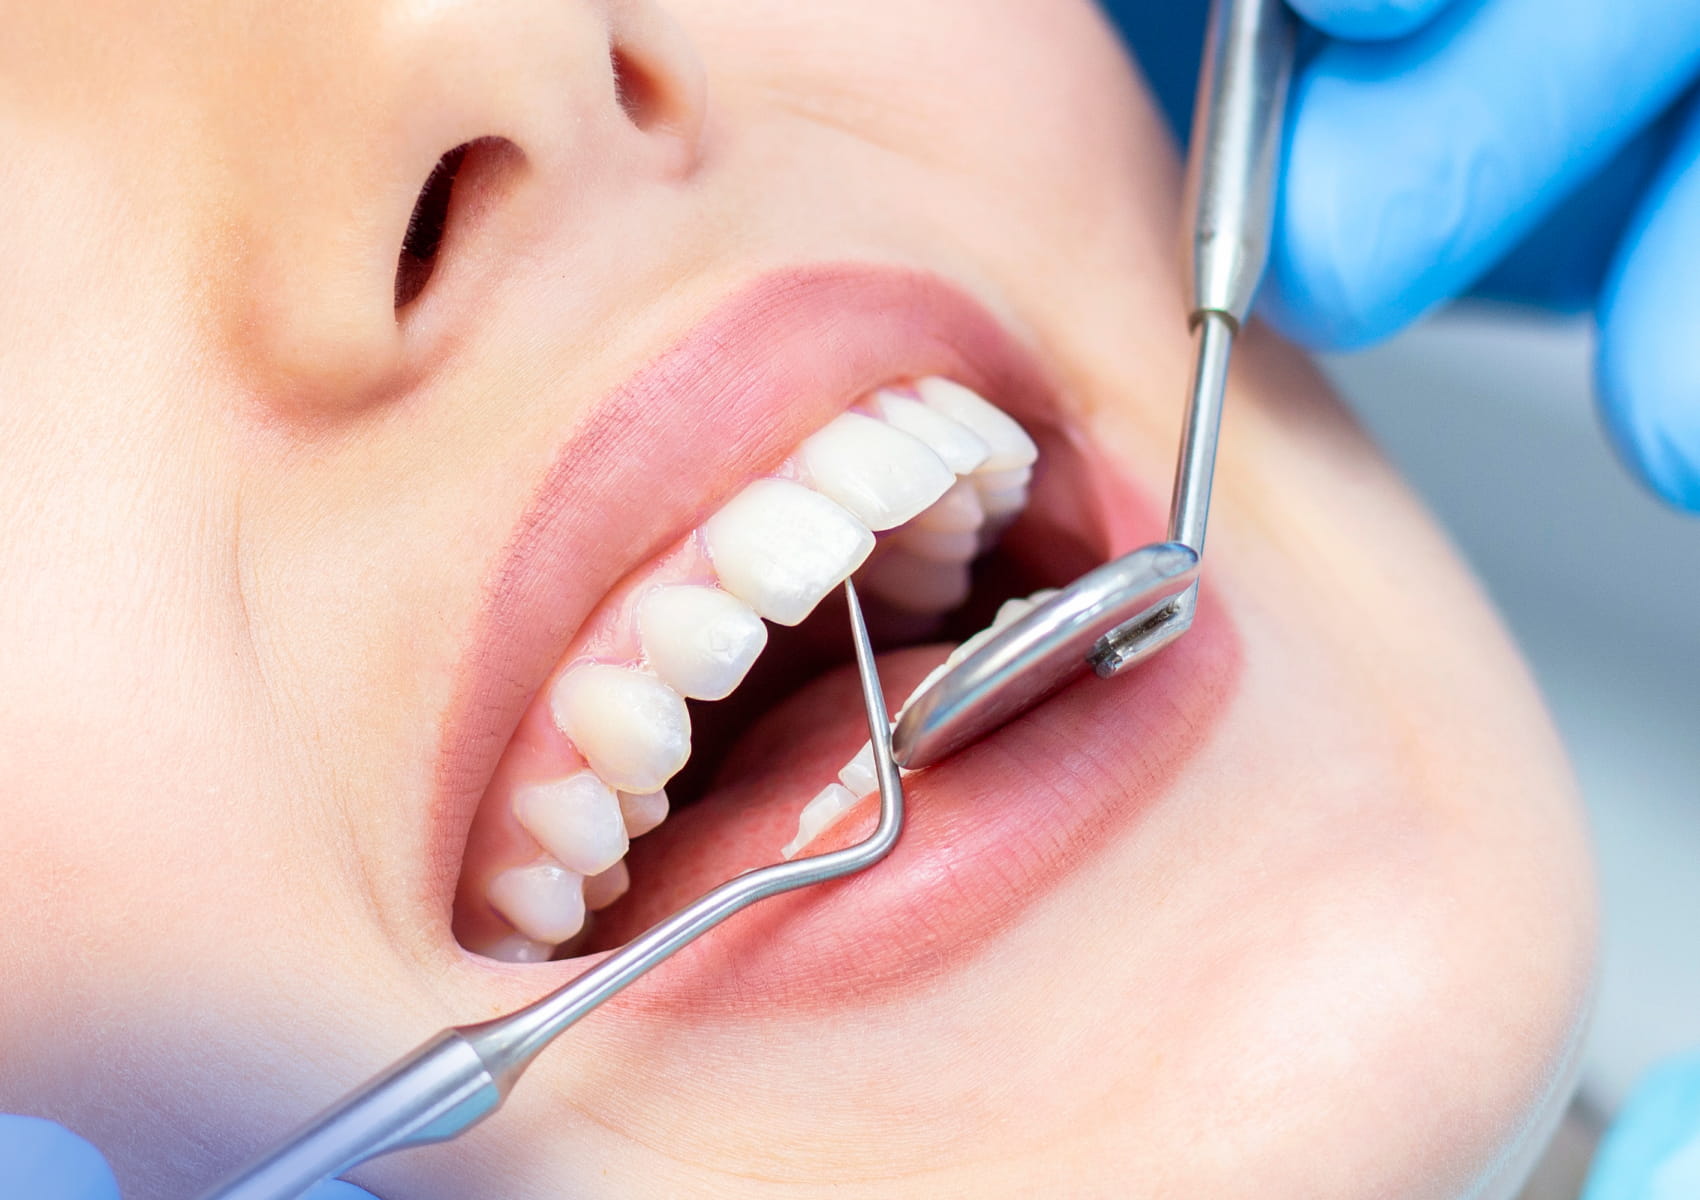 کلینیک دندانپزشکی در ماهدشت کرج/ خدمات دندانپزشکی ماهدشت